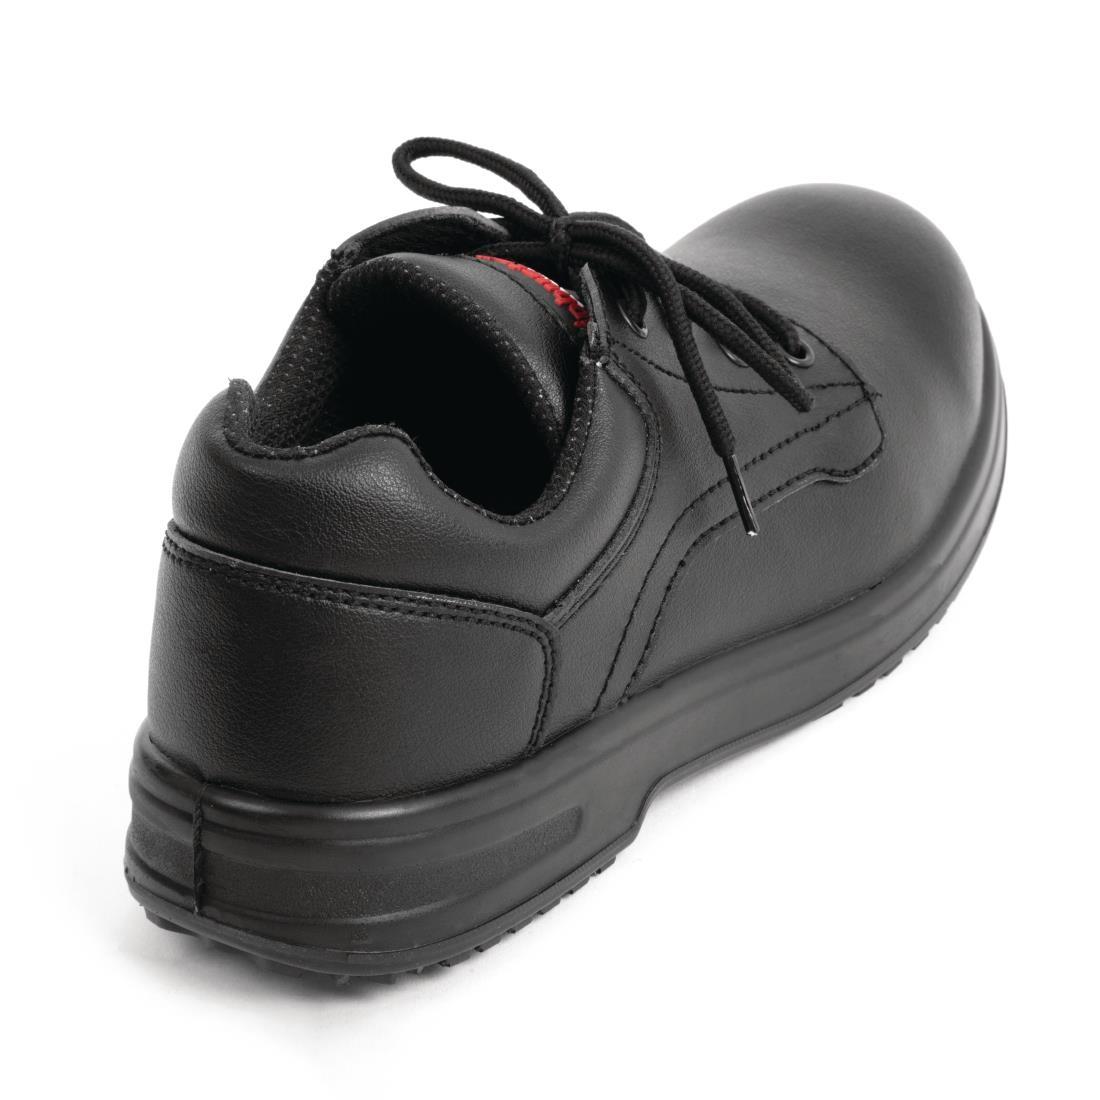 Slipbuster Basic Toe Cap Safety Shoes Black 42 - BB497-42  - 3